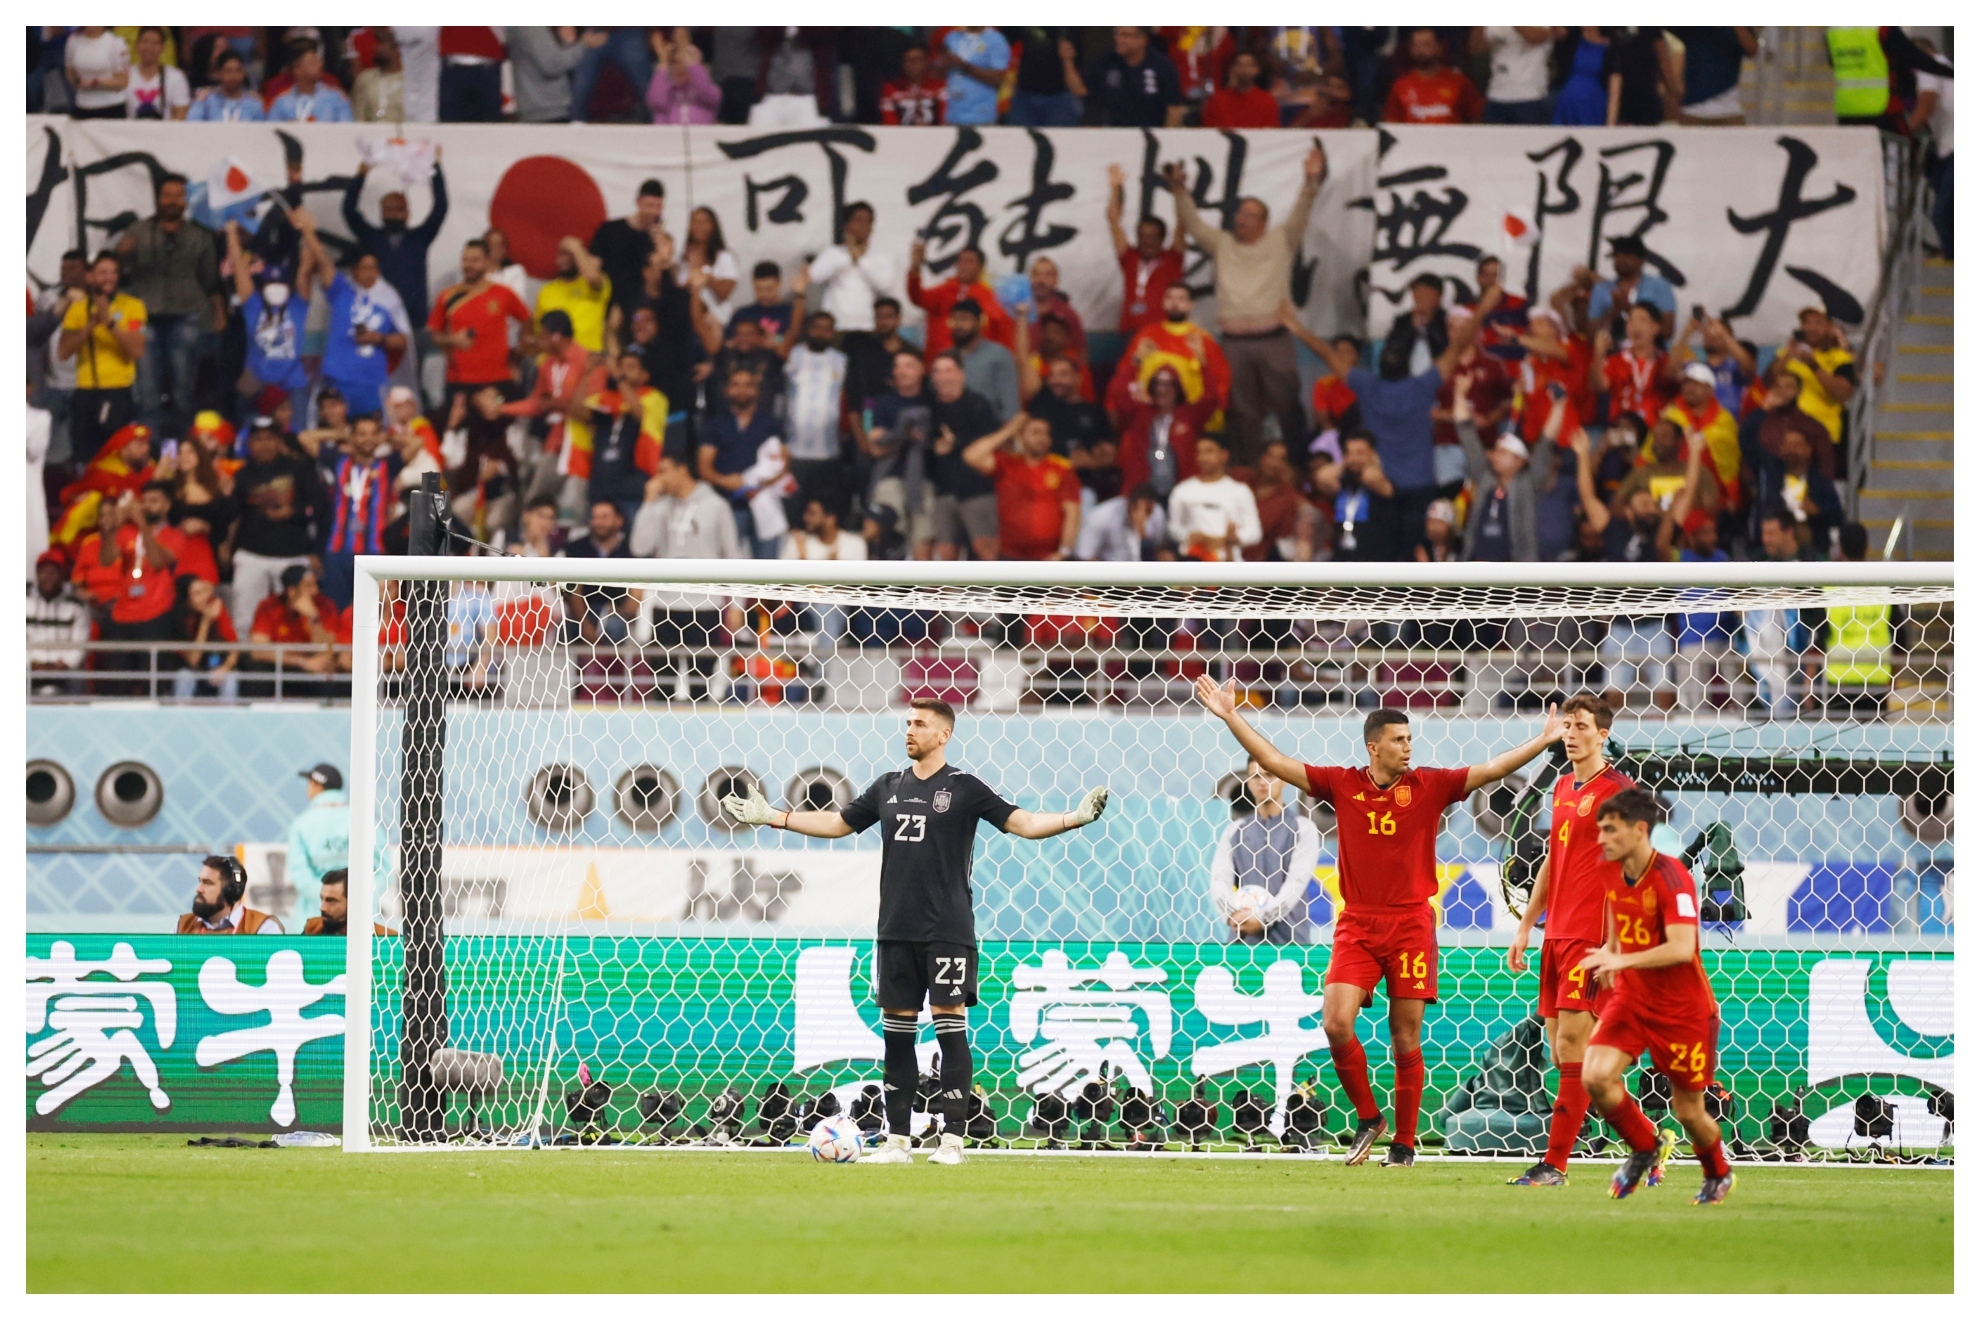 El tanto de Tanaka fue protestado por la selección española por estimar que el balón había salido fuera del campo.